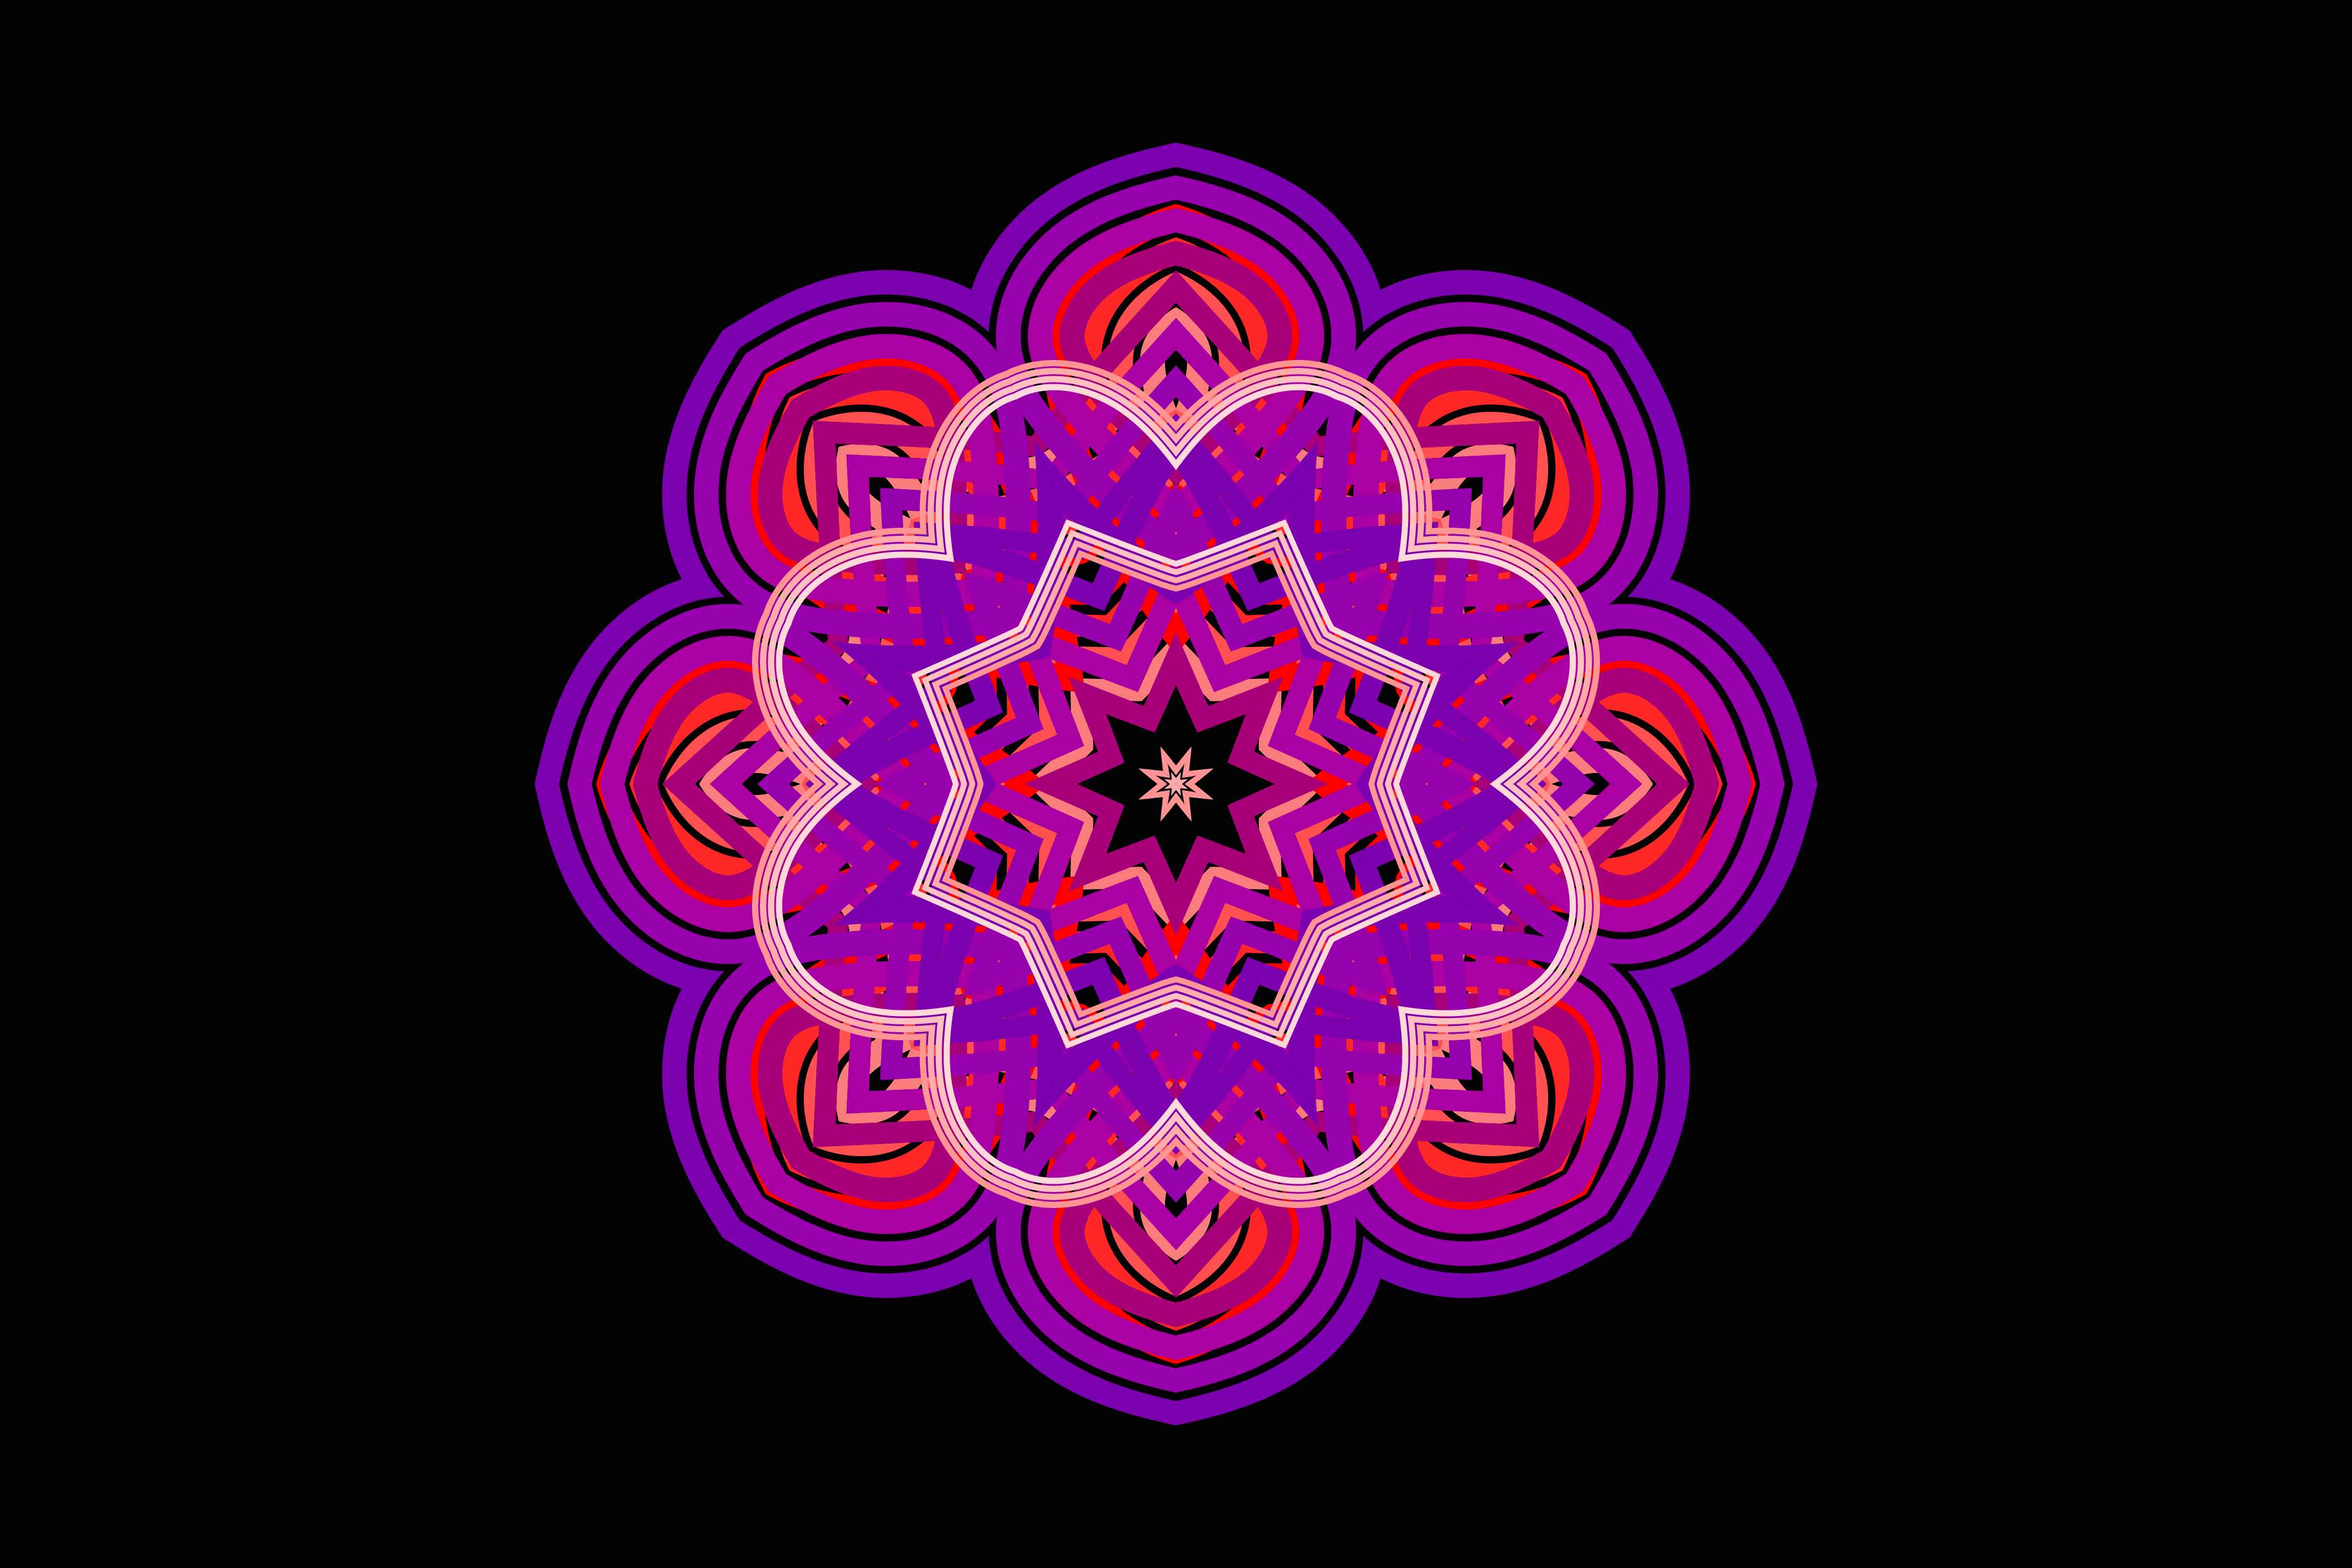 Beautiful Mandala Art Design Bundle preview image.